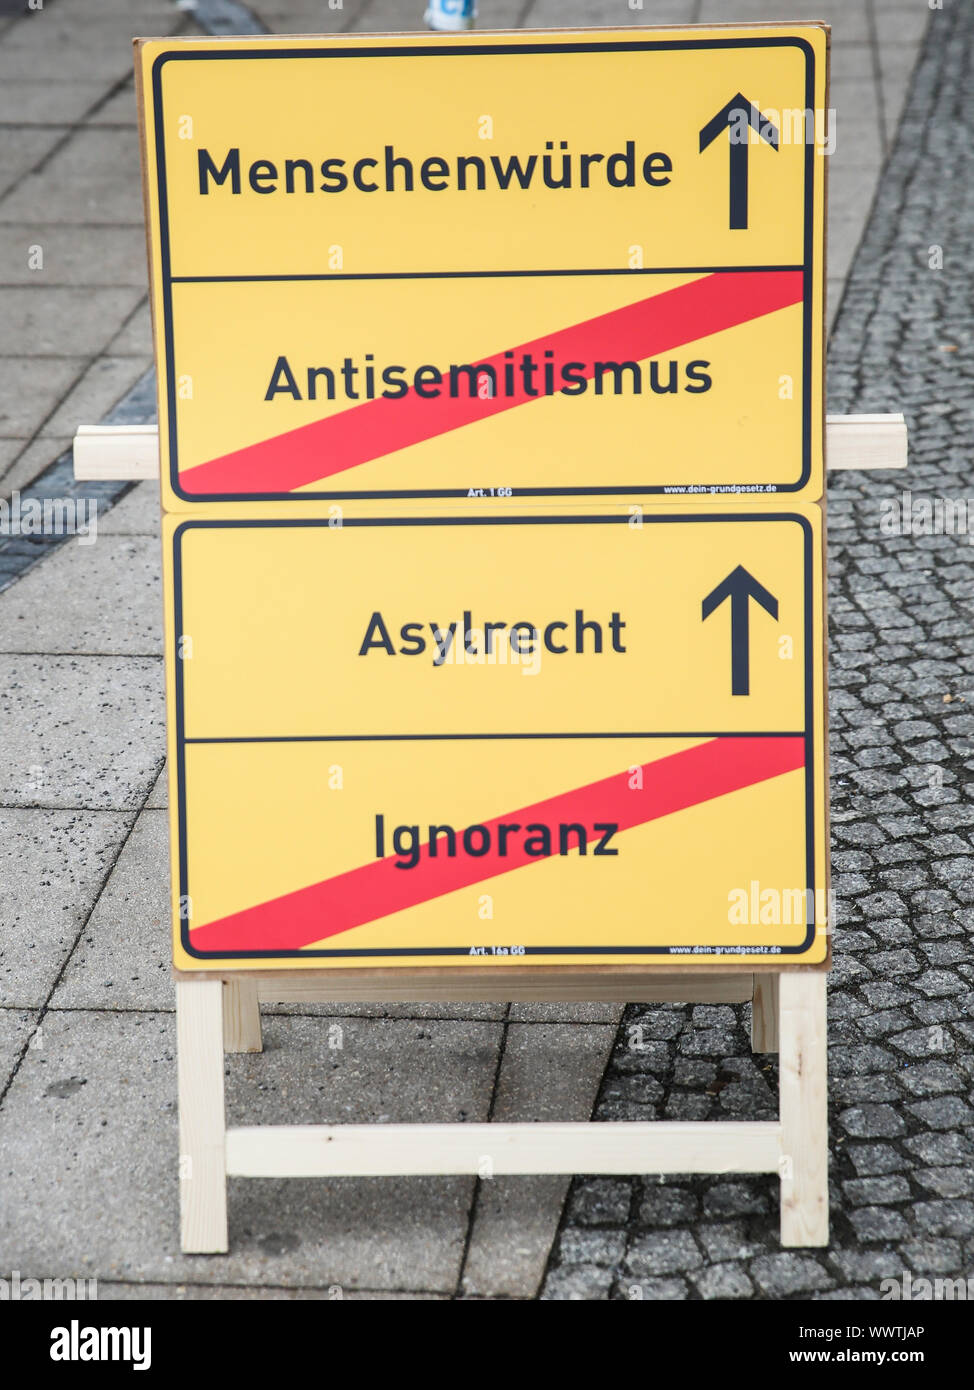 La dignità umana - anti-semitismo, in materia di diritto di asilo - l'Ignoranza Foto Stock